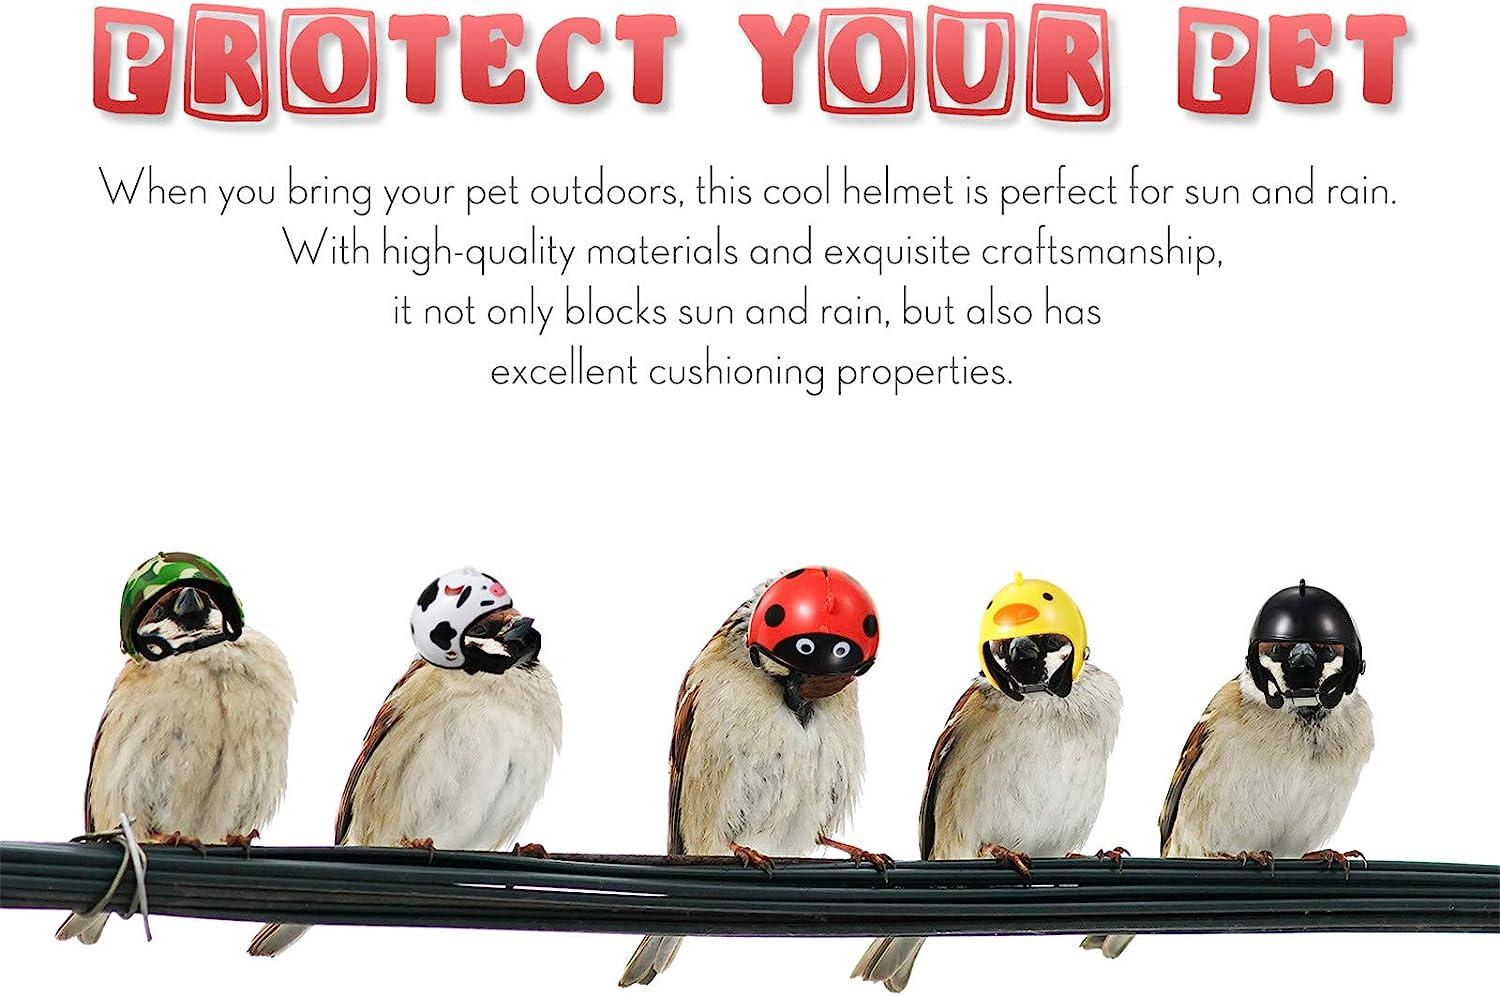 Hens Chicken Helmet Pet Safety Helmet Funny Parrot Headgear